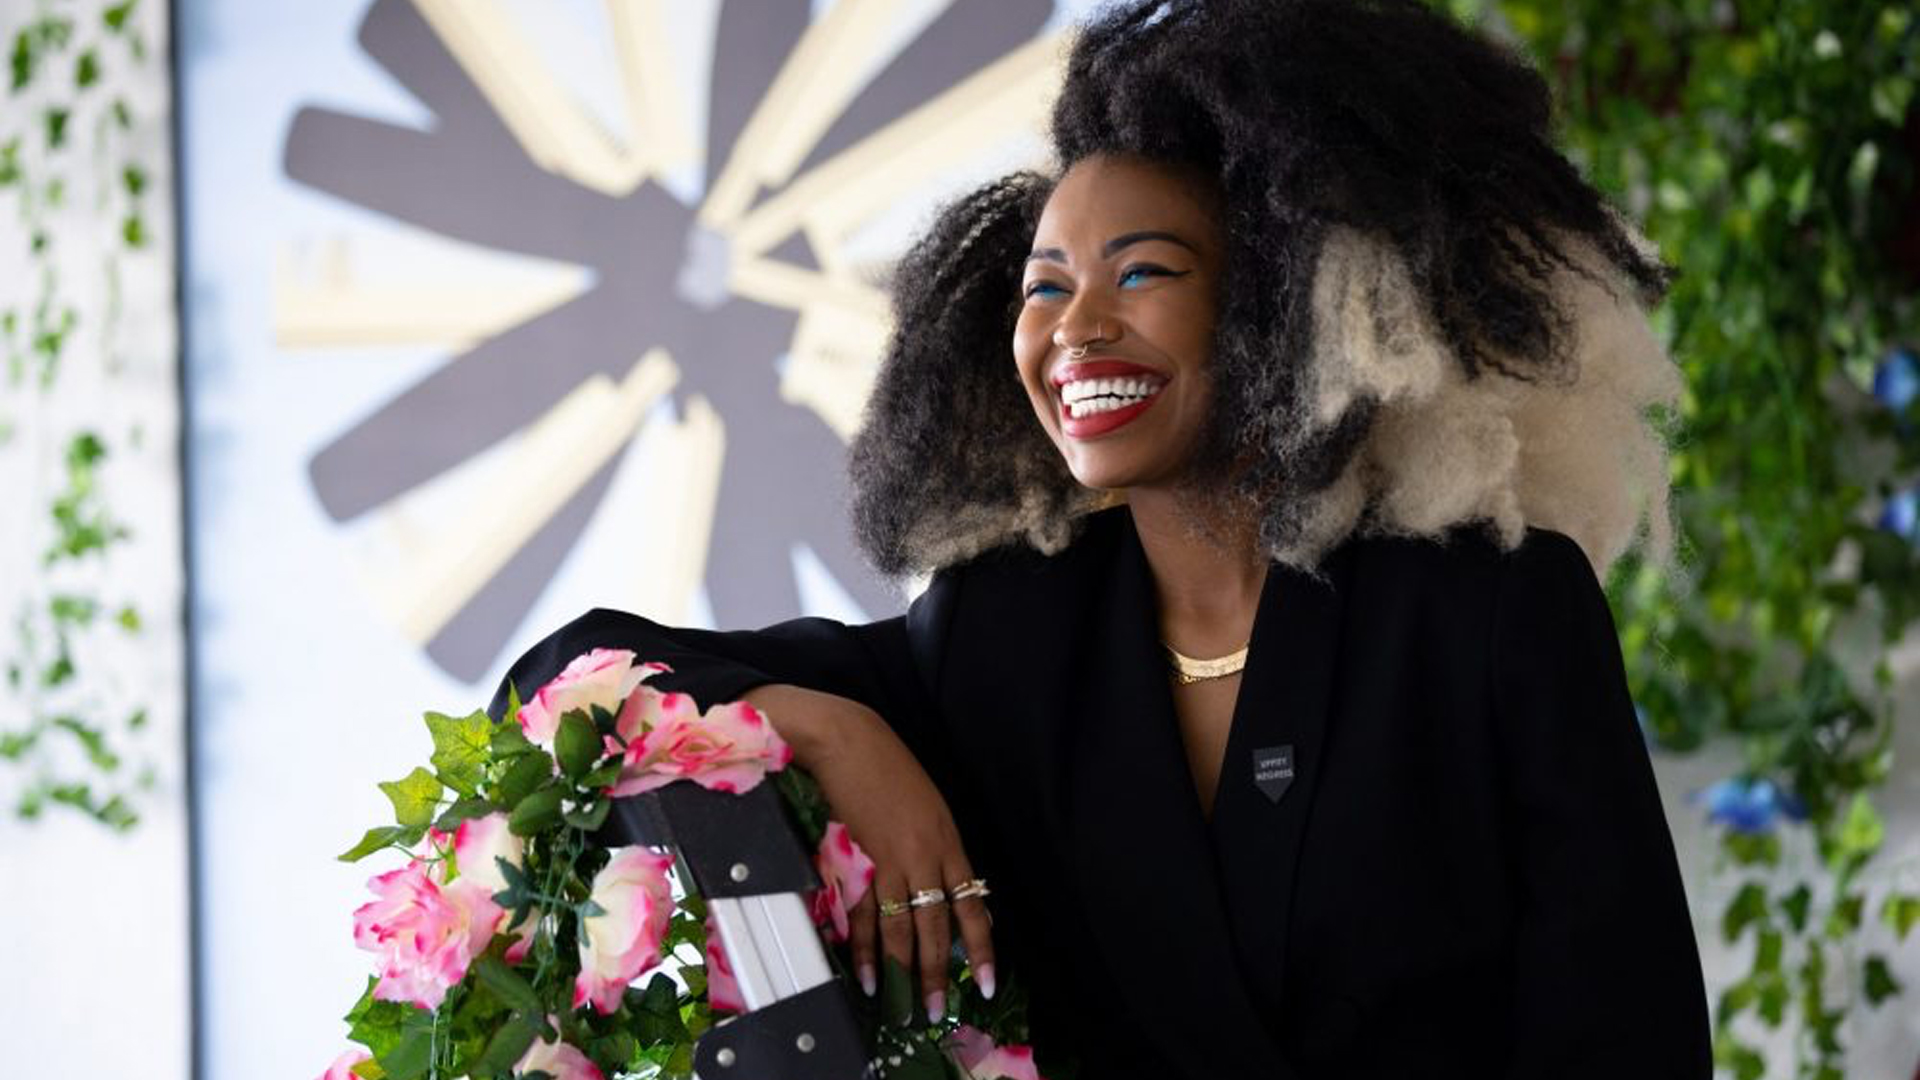 Artist Autumn Breon Reimagines A More Equitable Future For Black Women At LA's Frieze Art Fair